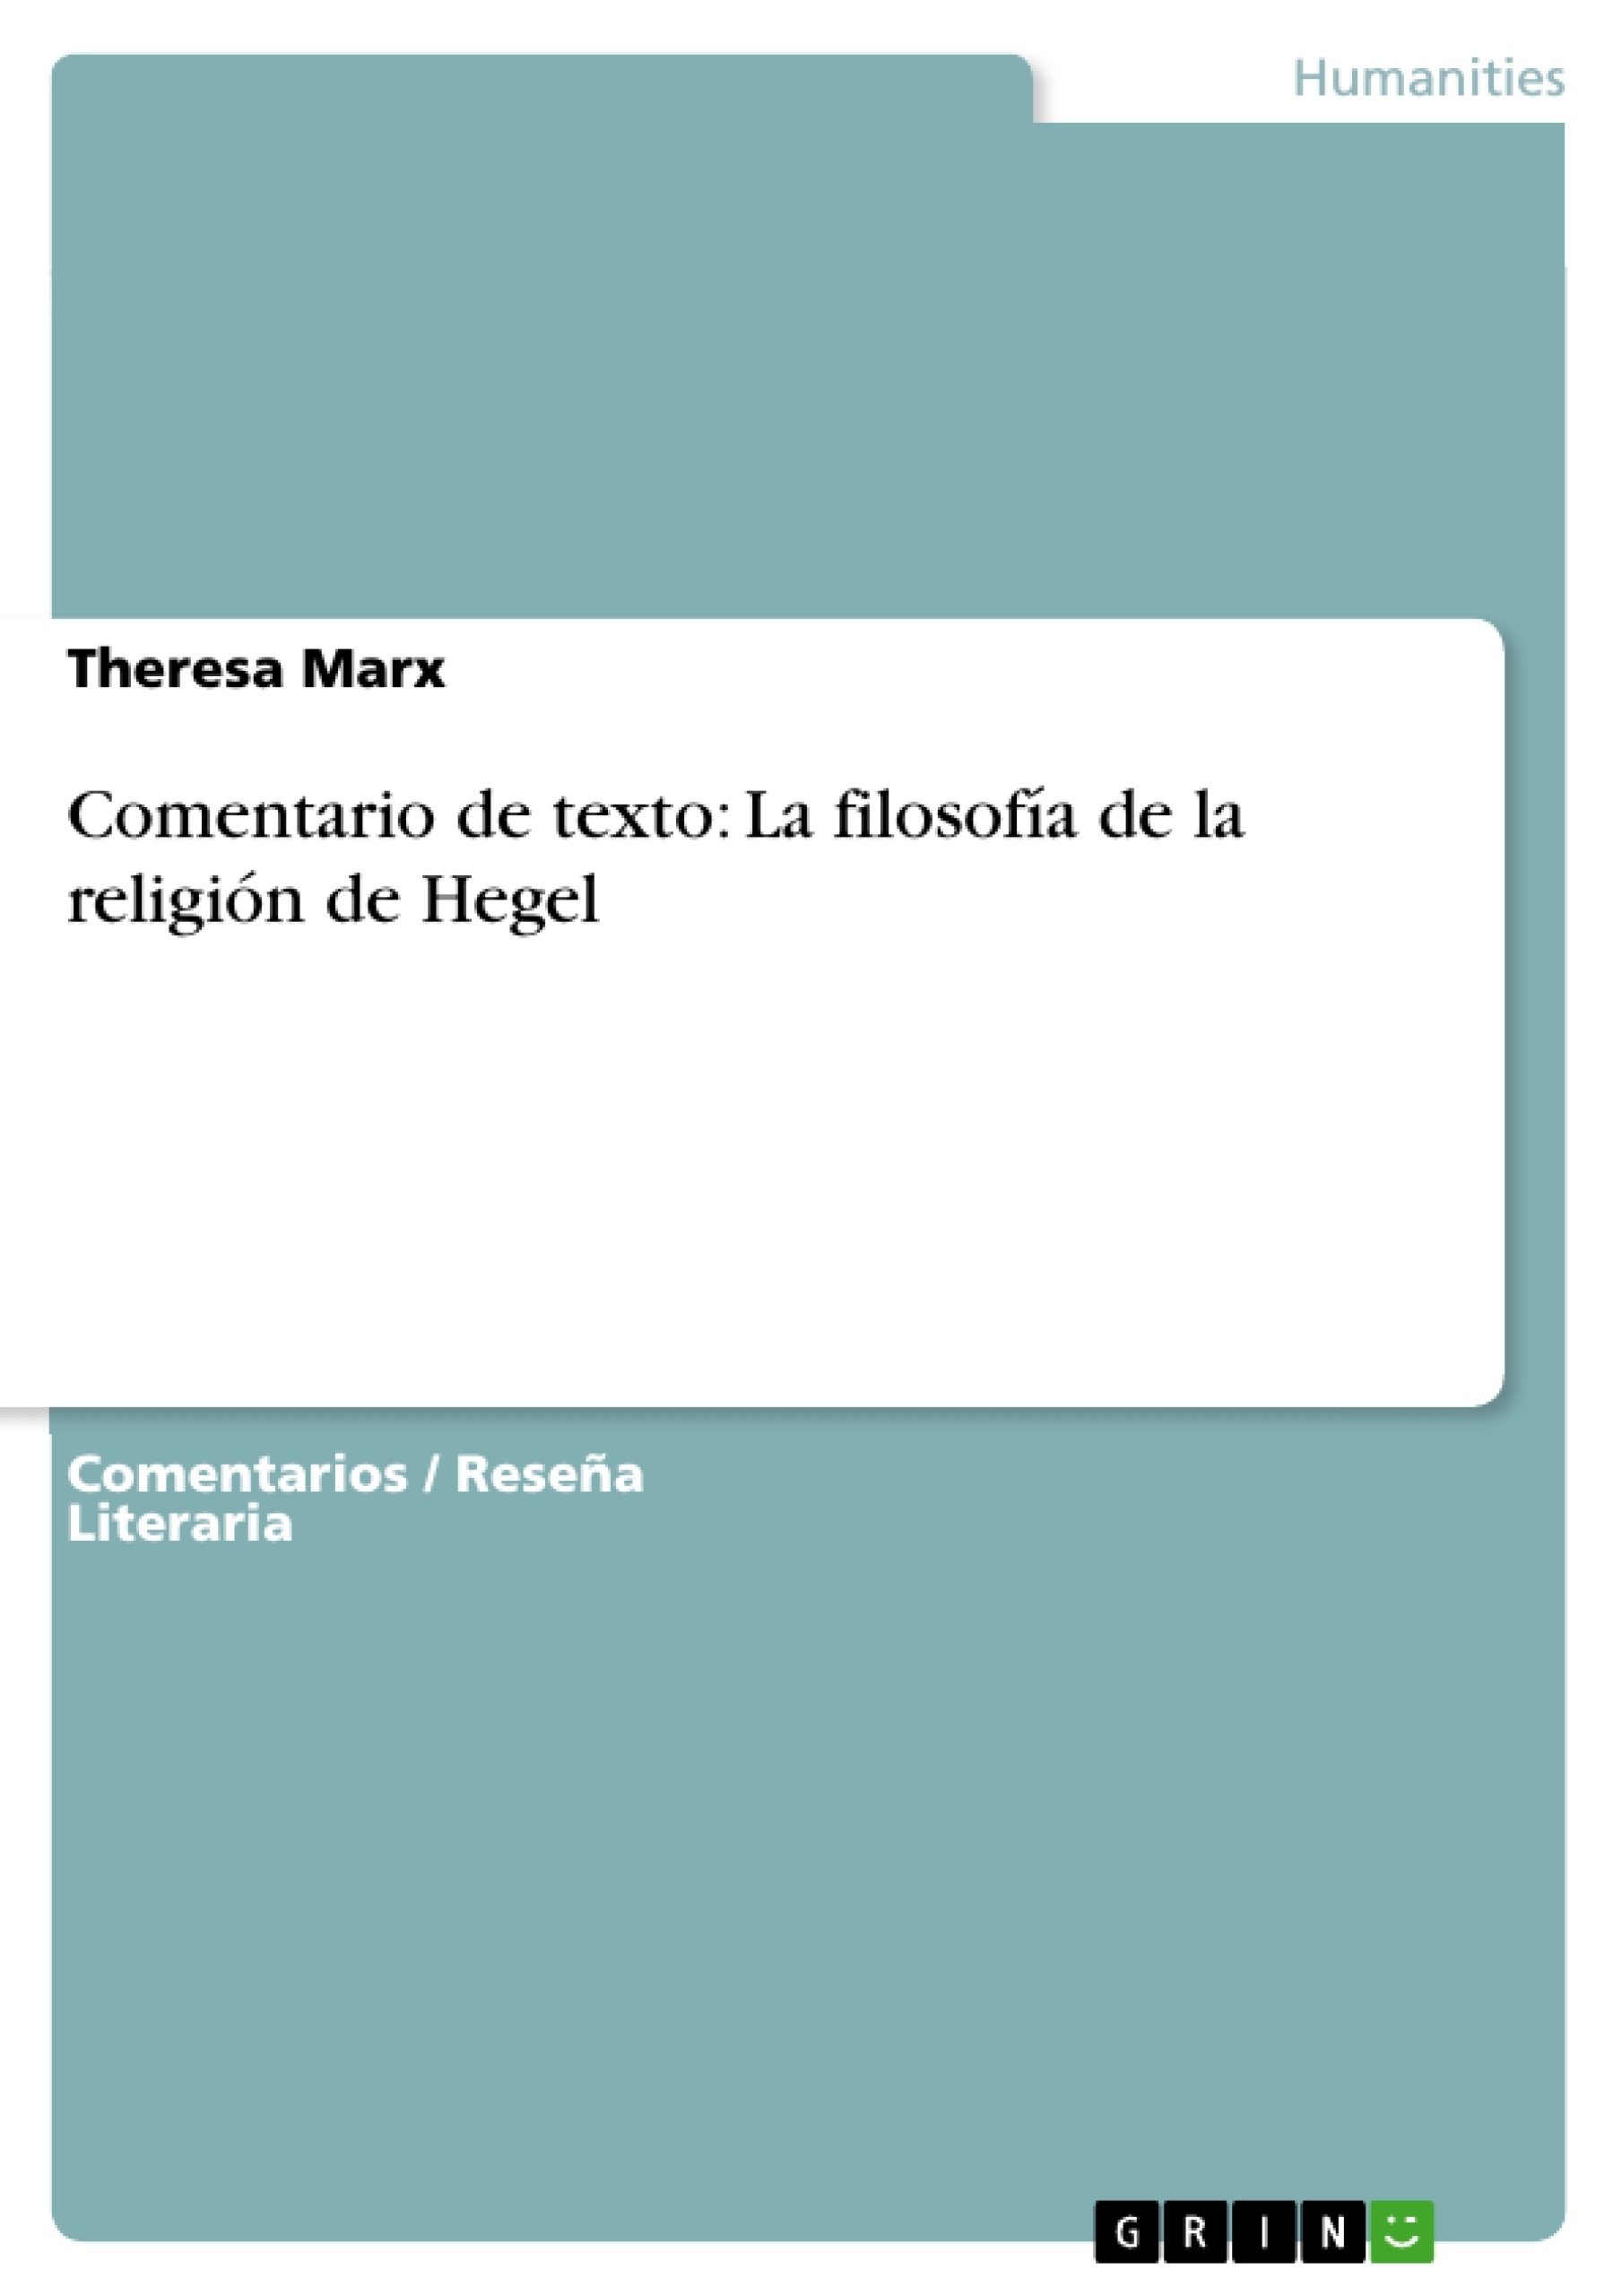 Título: Comentario de texto: La filosofía de la religión de Hegel